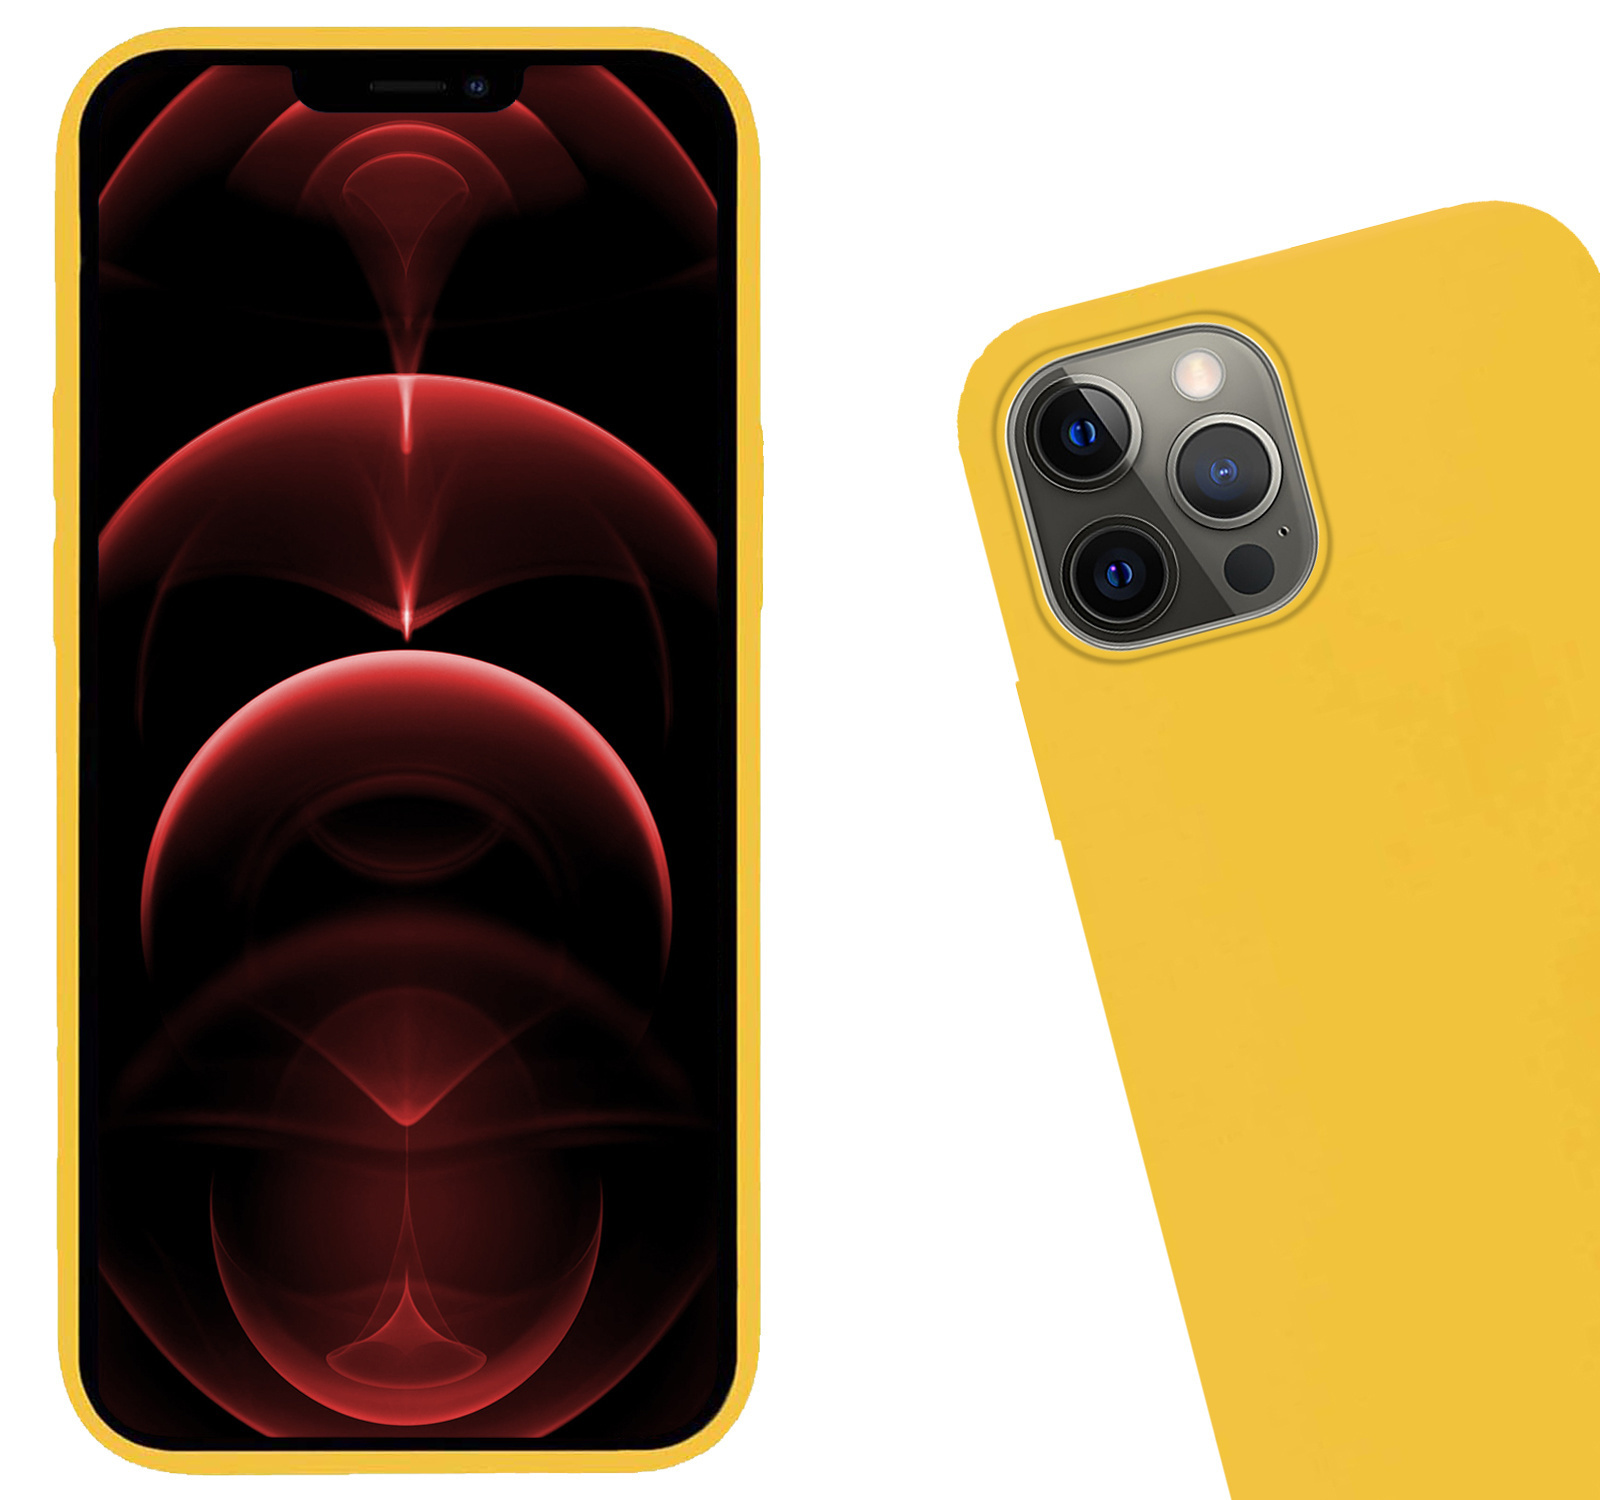 Hoes voor iPhone 14 Pro Max Hoesje Siliconen Case Back Cover - Hoes voor iPhone 14 Pro Max Hoes Cover Silicone - Geel - 2X